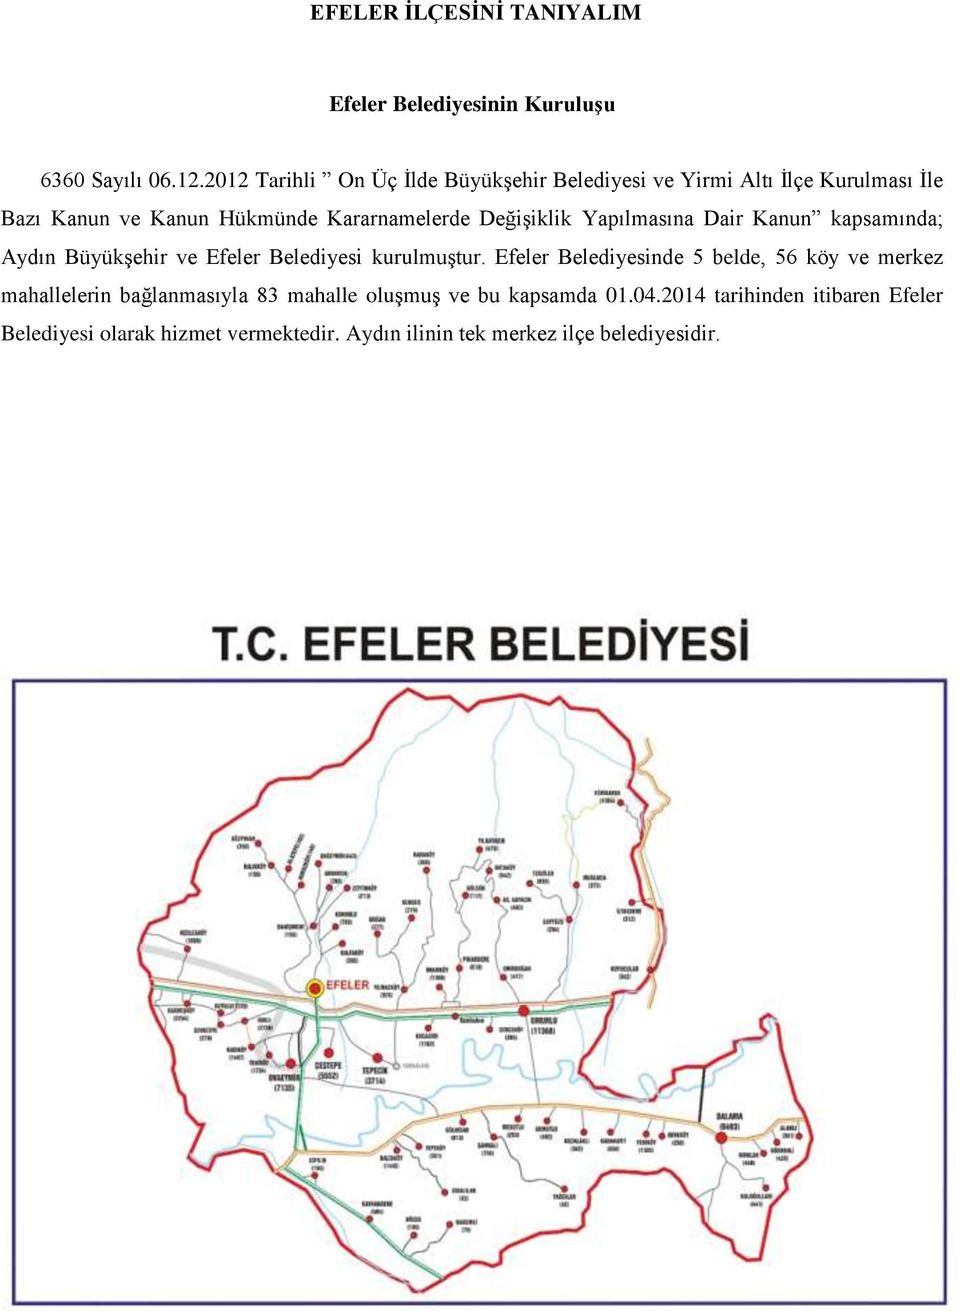 Değişiklik Yapılmasına Dair Kanun kapsamında; Aydın Büyükşehir ve Efeler Belediyesi kurulmuştur.